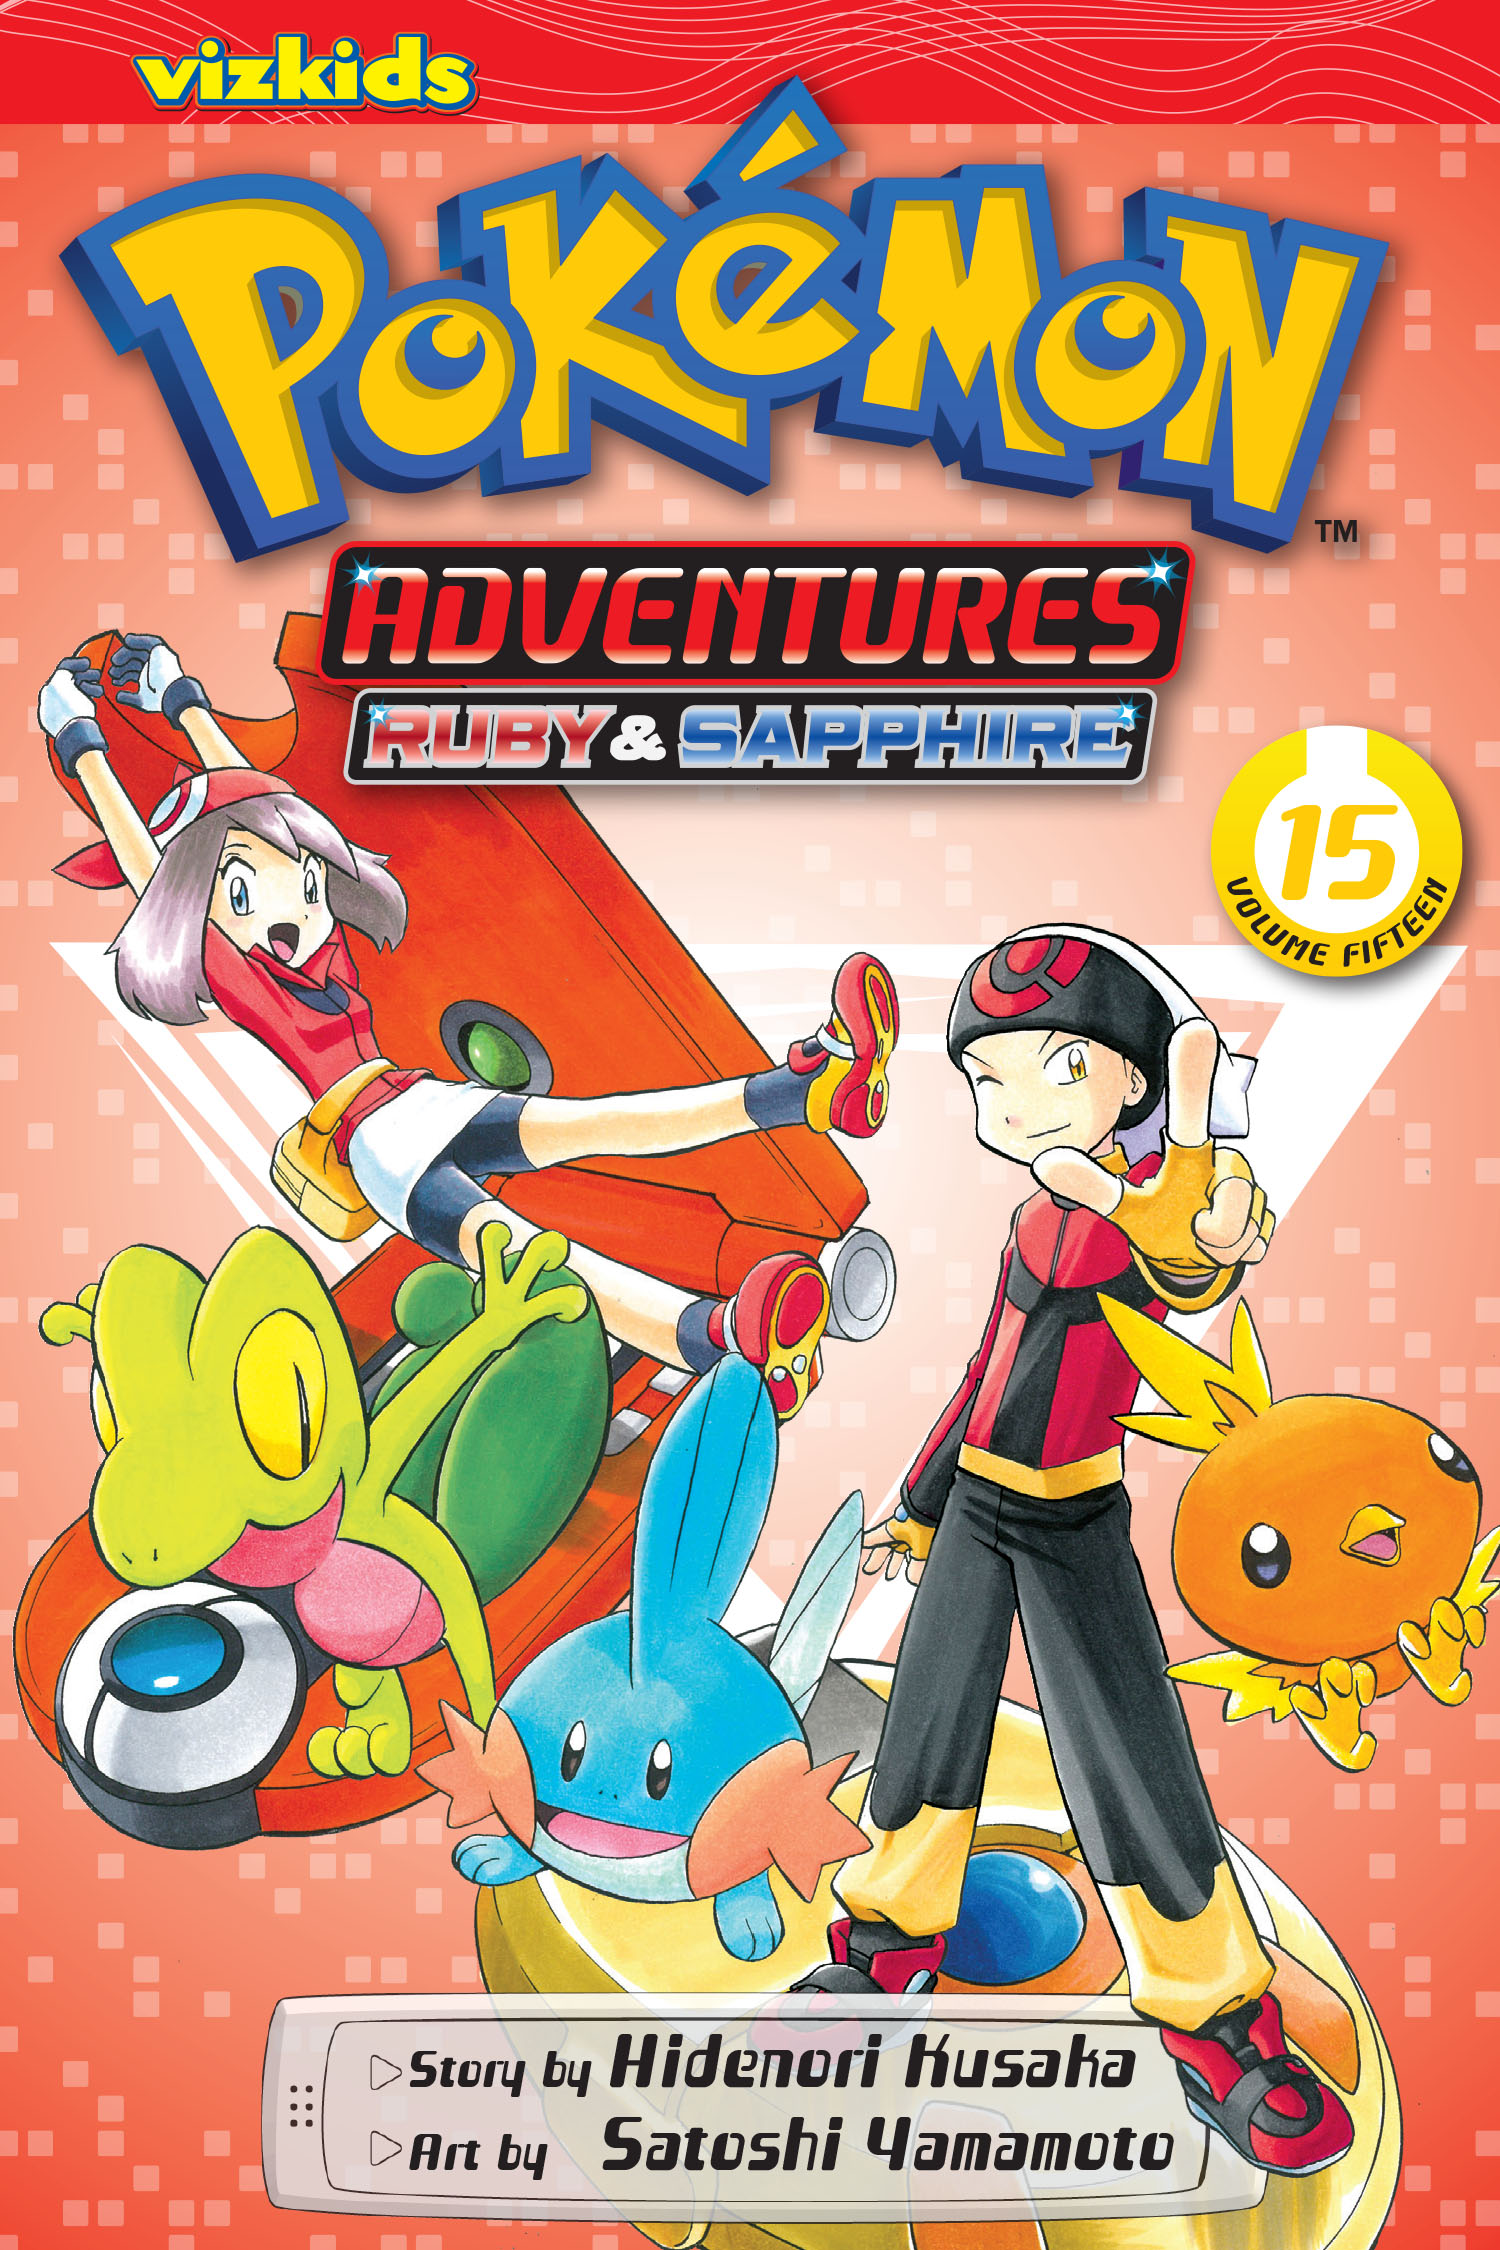 Pokémon Adventures: Heart Gold & Soul Silver, Vol. 2